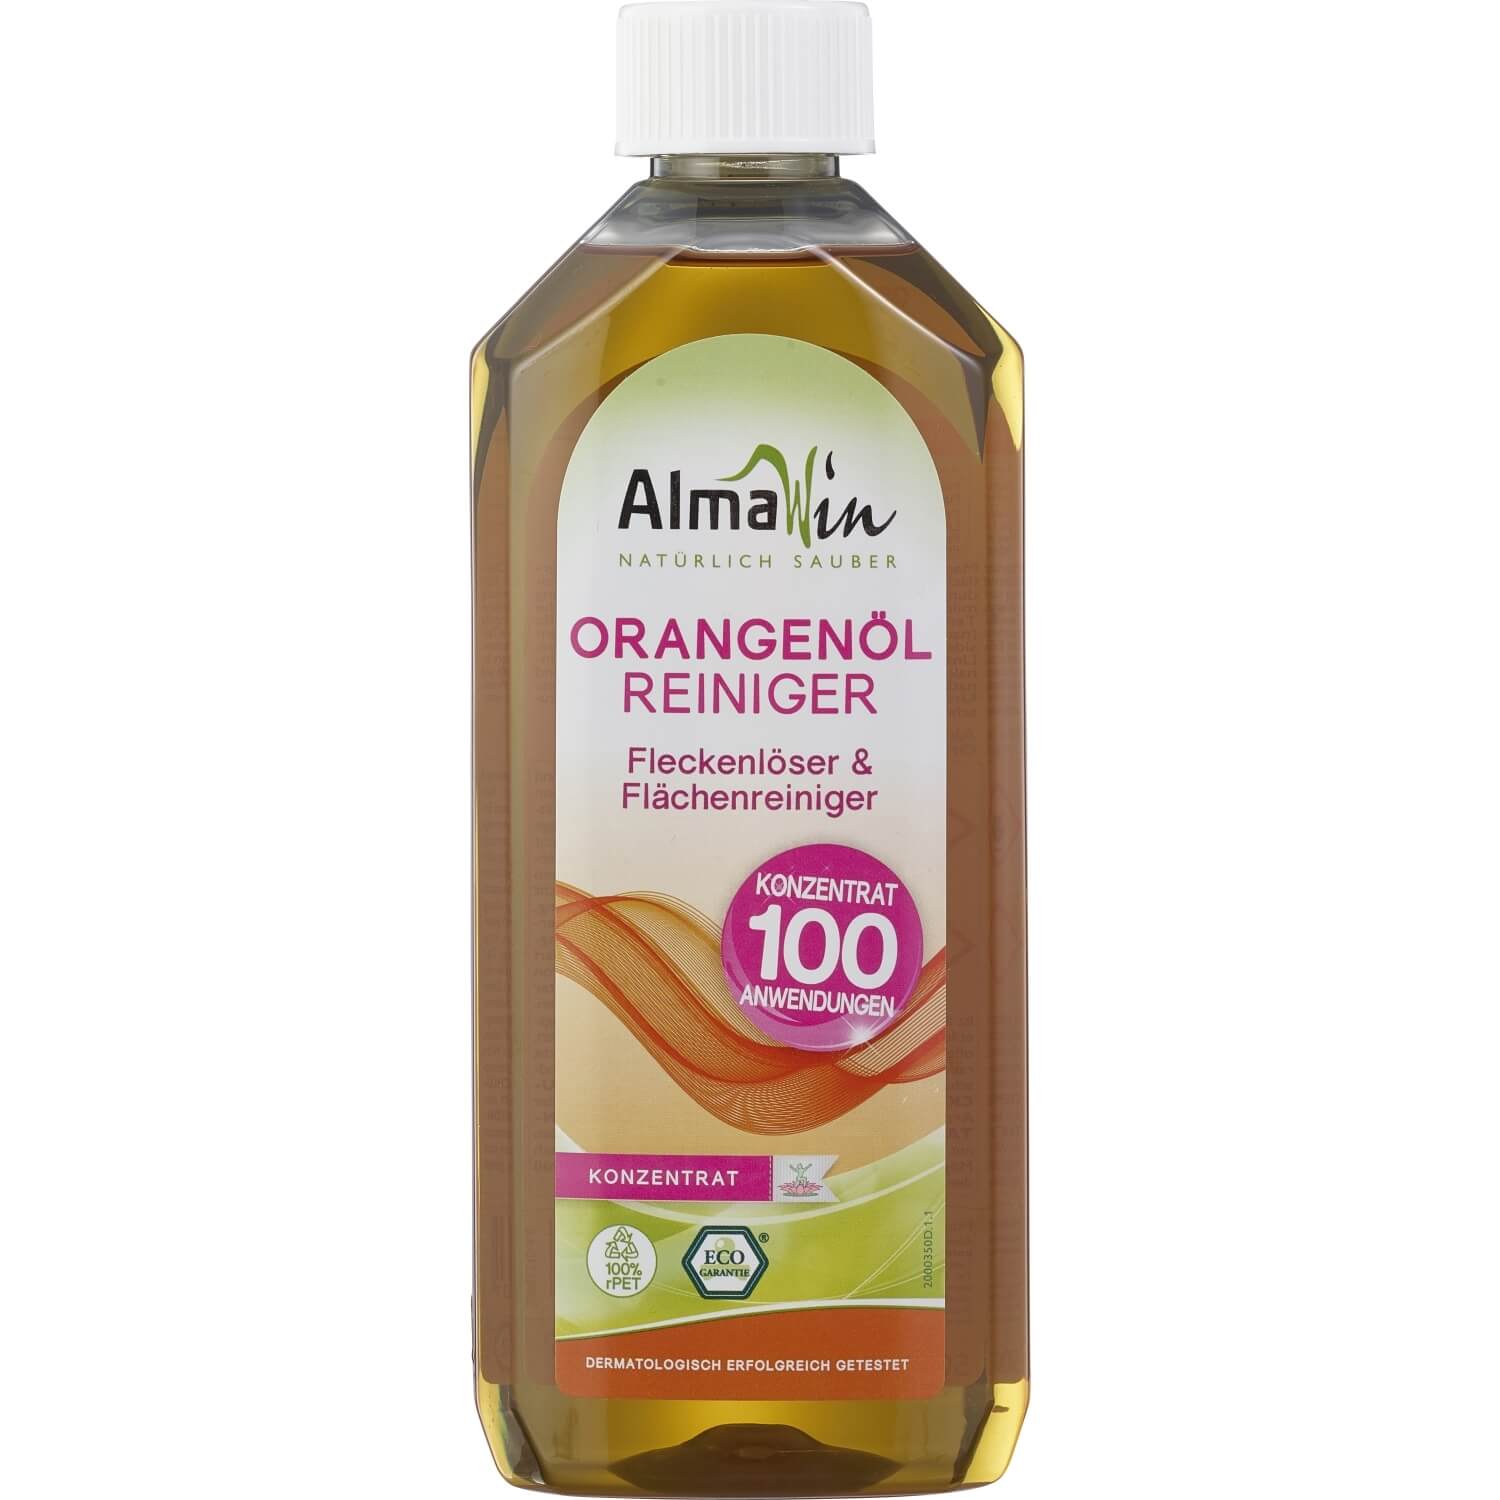 AlmaWin Orangenöl-Reiniger, 0,5 l